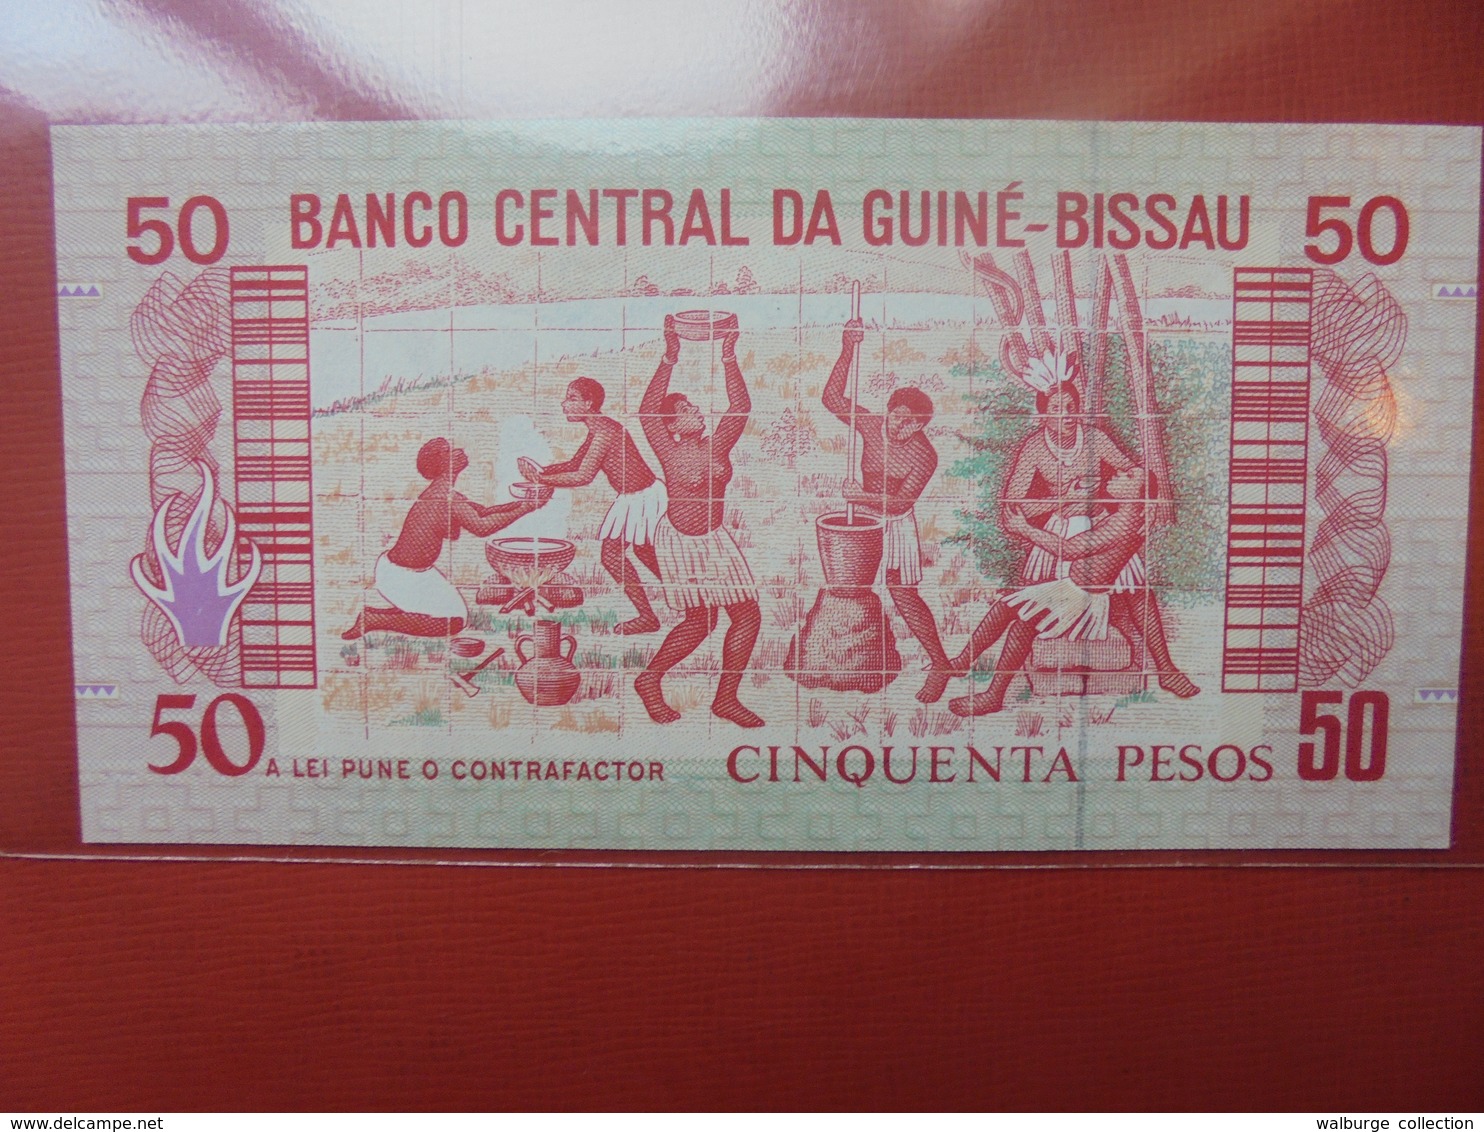 GUINEE-BISSAU 50 PESOS 1990 PEU CIRCULER/NEUF - Guinea-Bissau